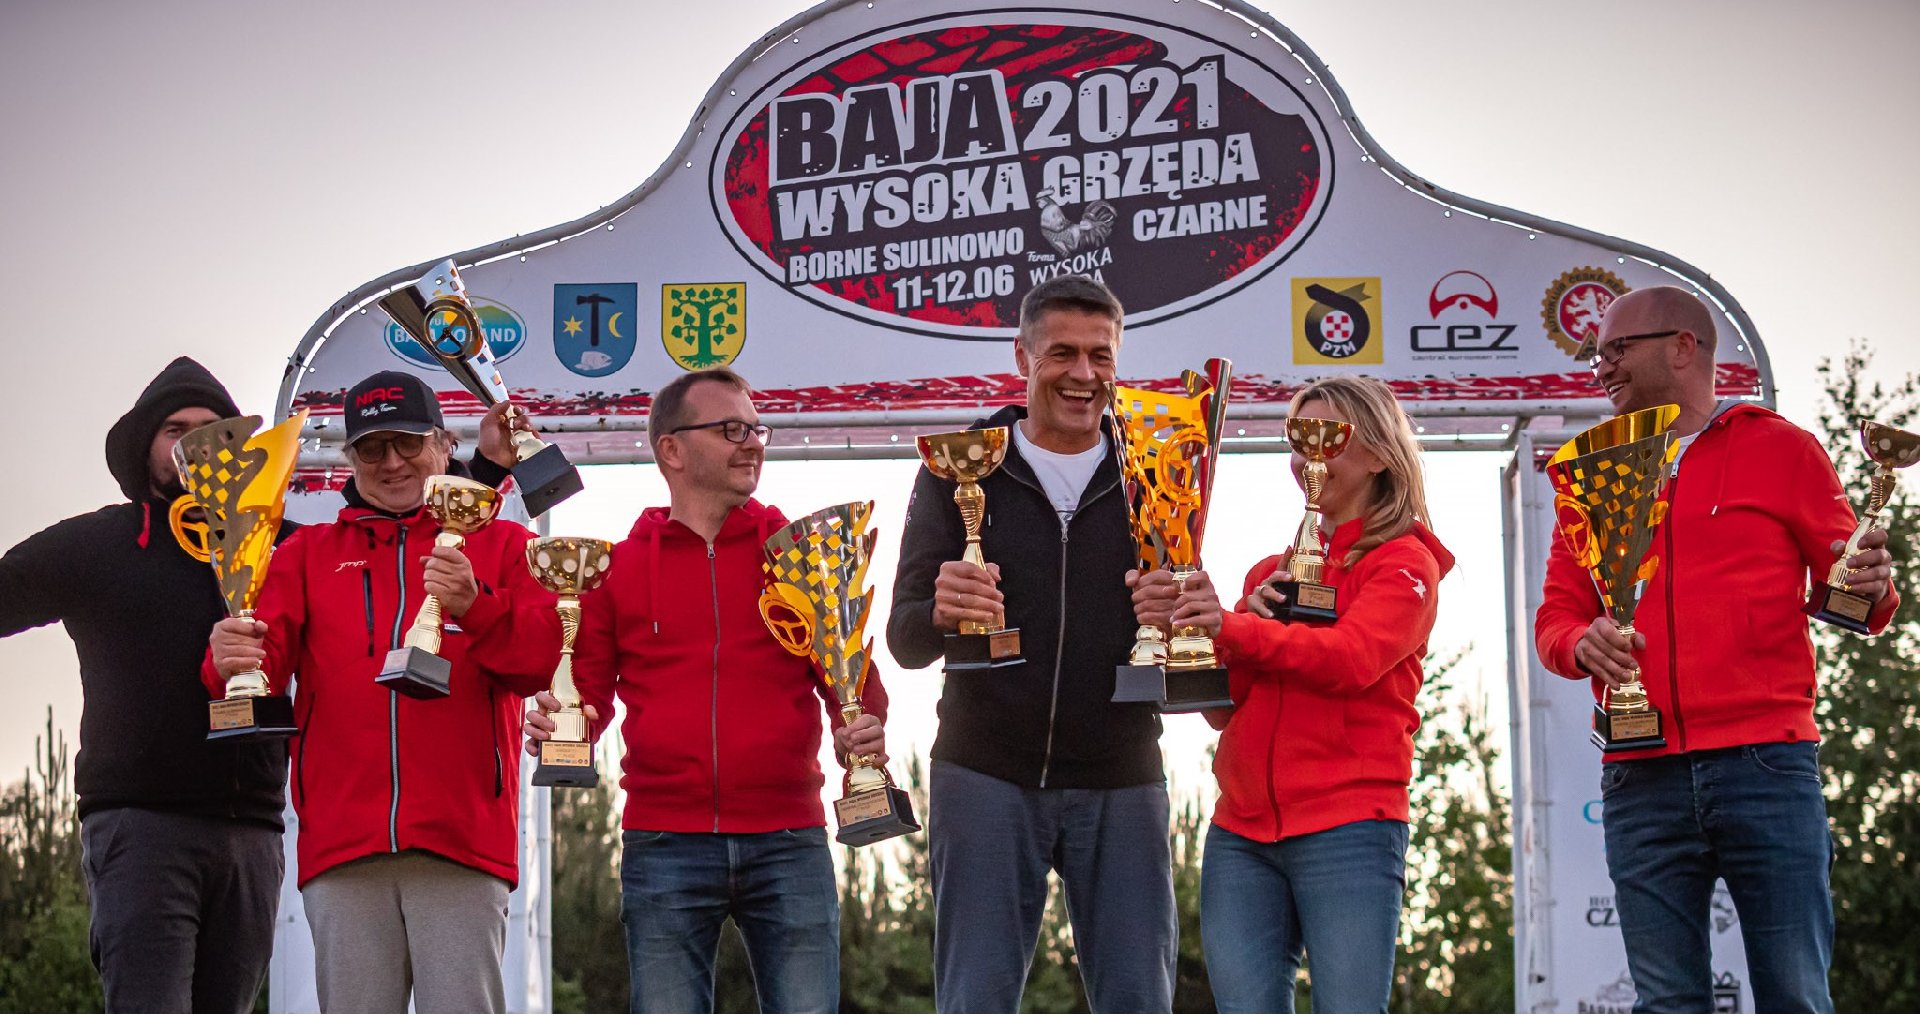 Baja Wysoka Grzęda 2021 - Hołowczyc i Kurzeja z kompletem punktów w Mistrzostwach Polski.